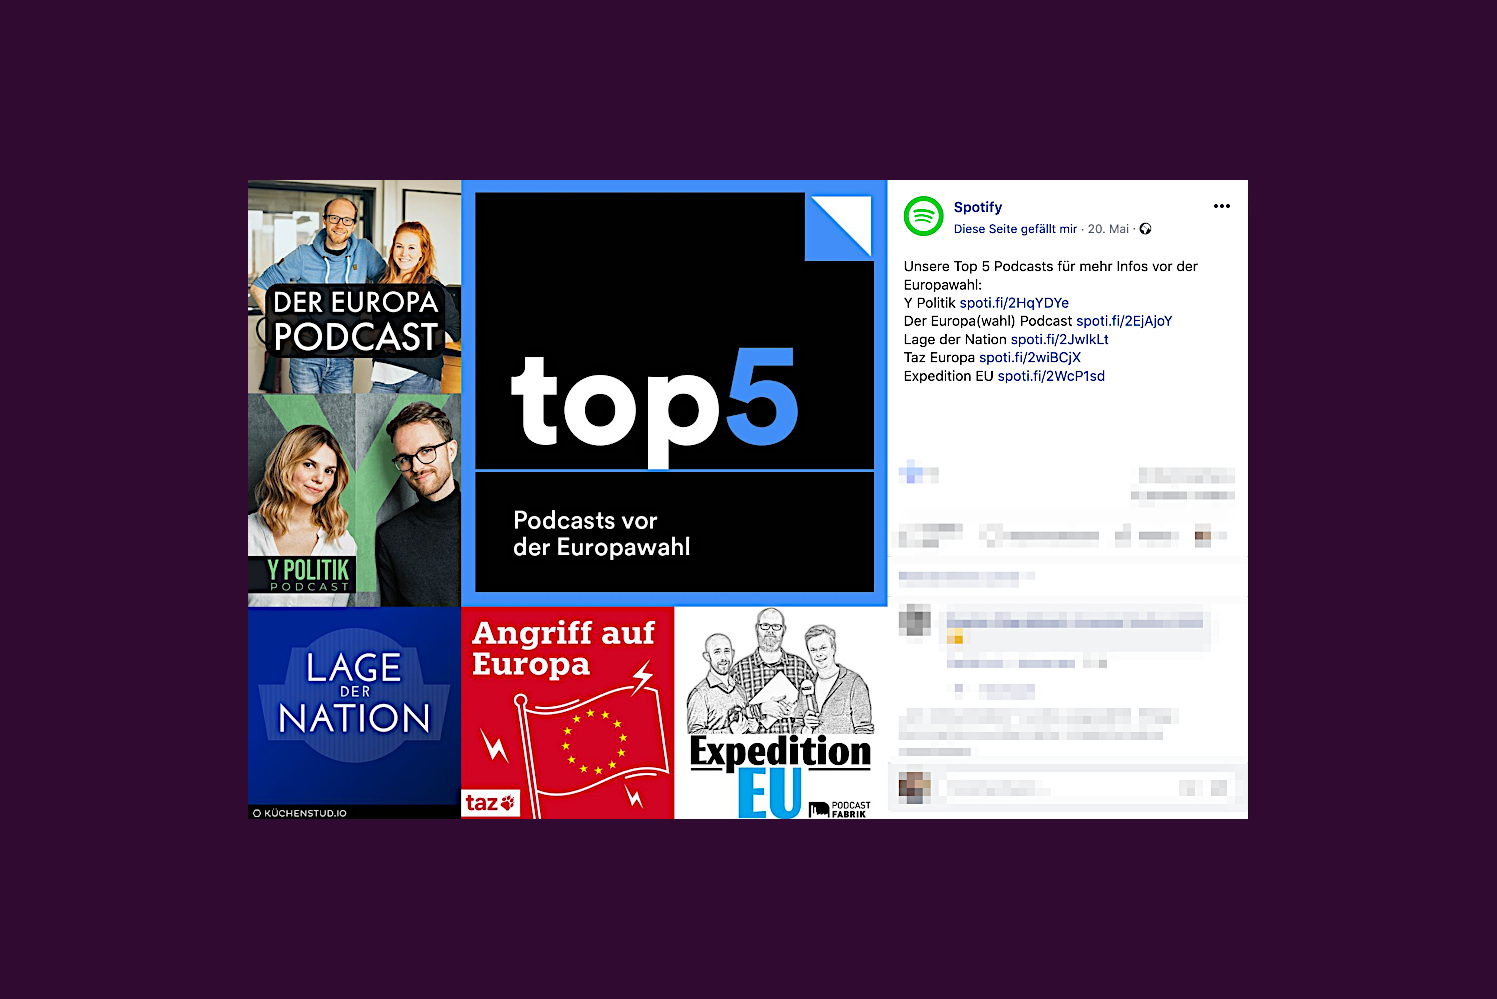 Y-Politik-ist-ein-Spotify-Top-Politik-Podcast-vor-der-Europawahl-2019